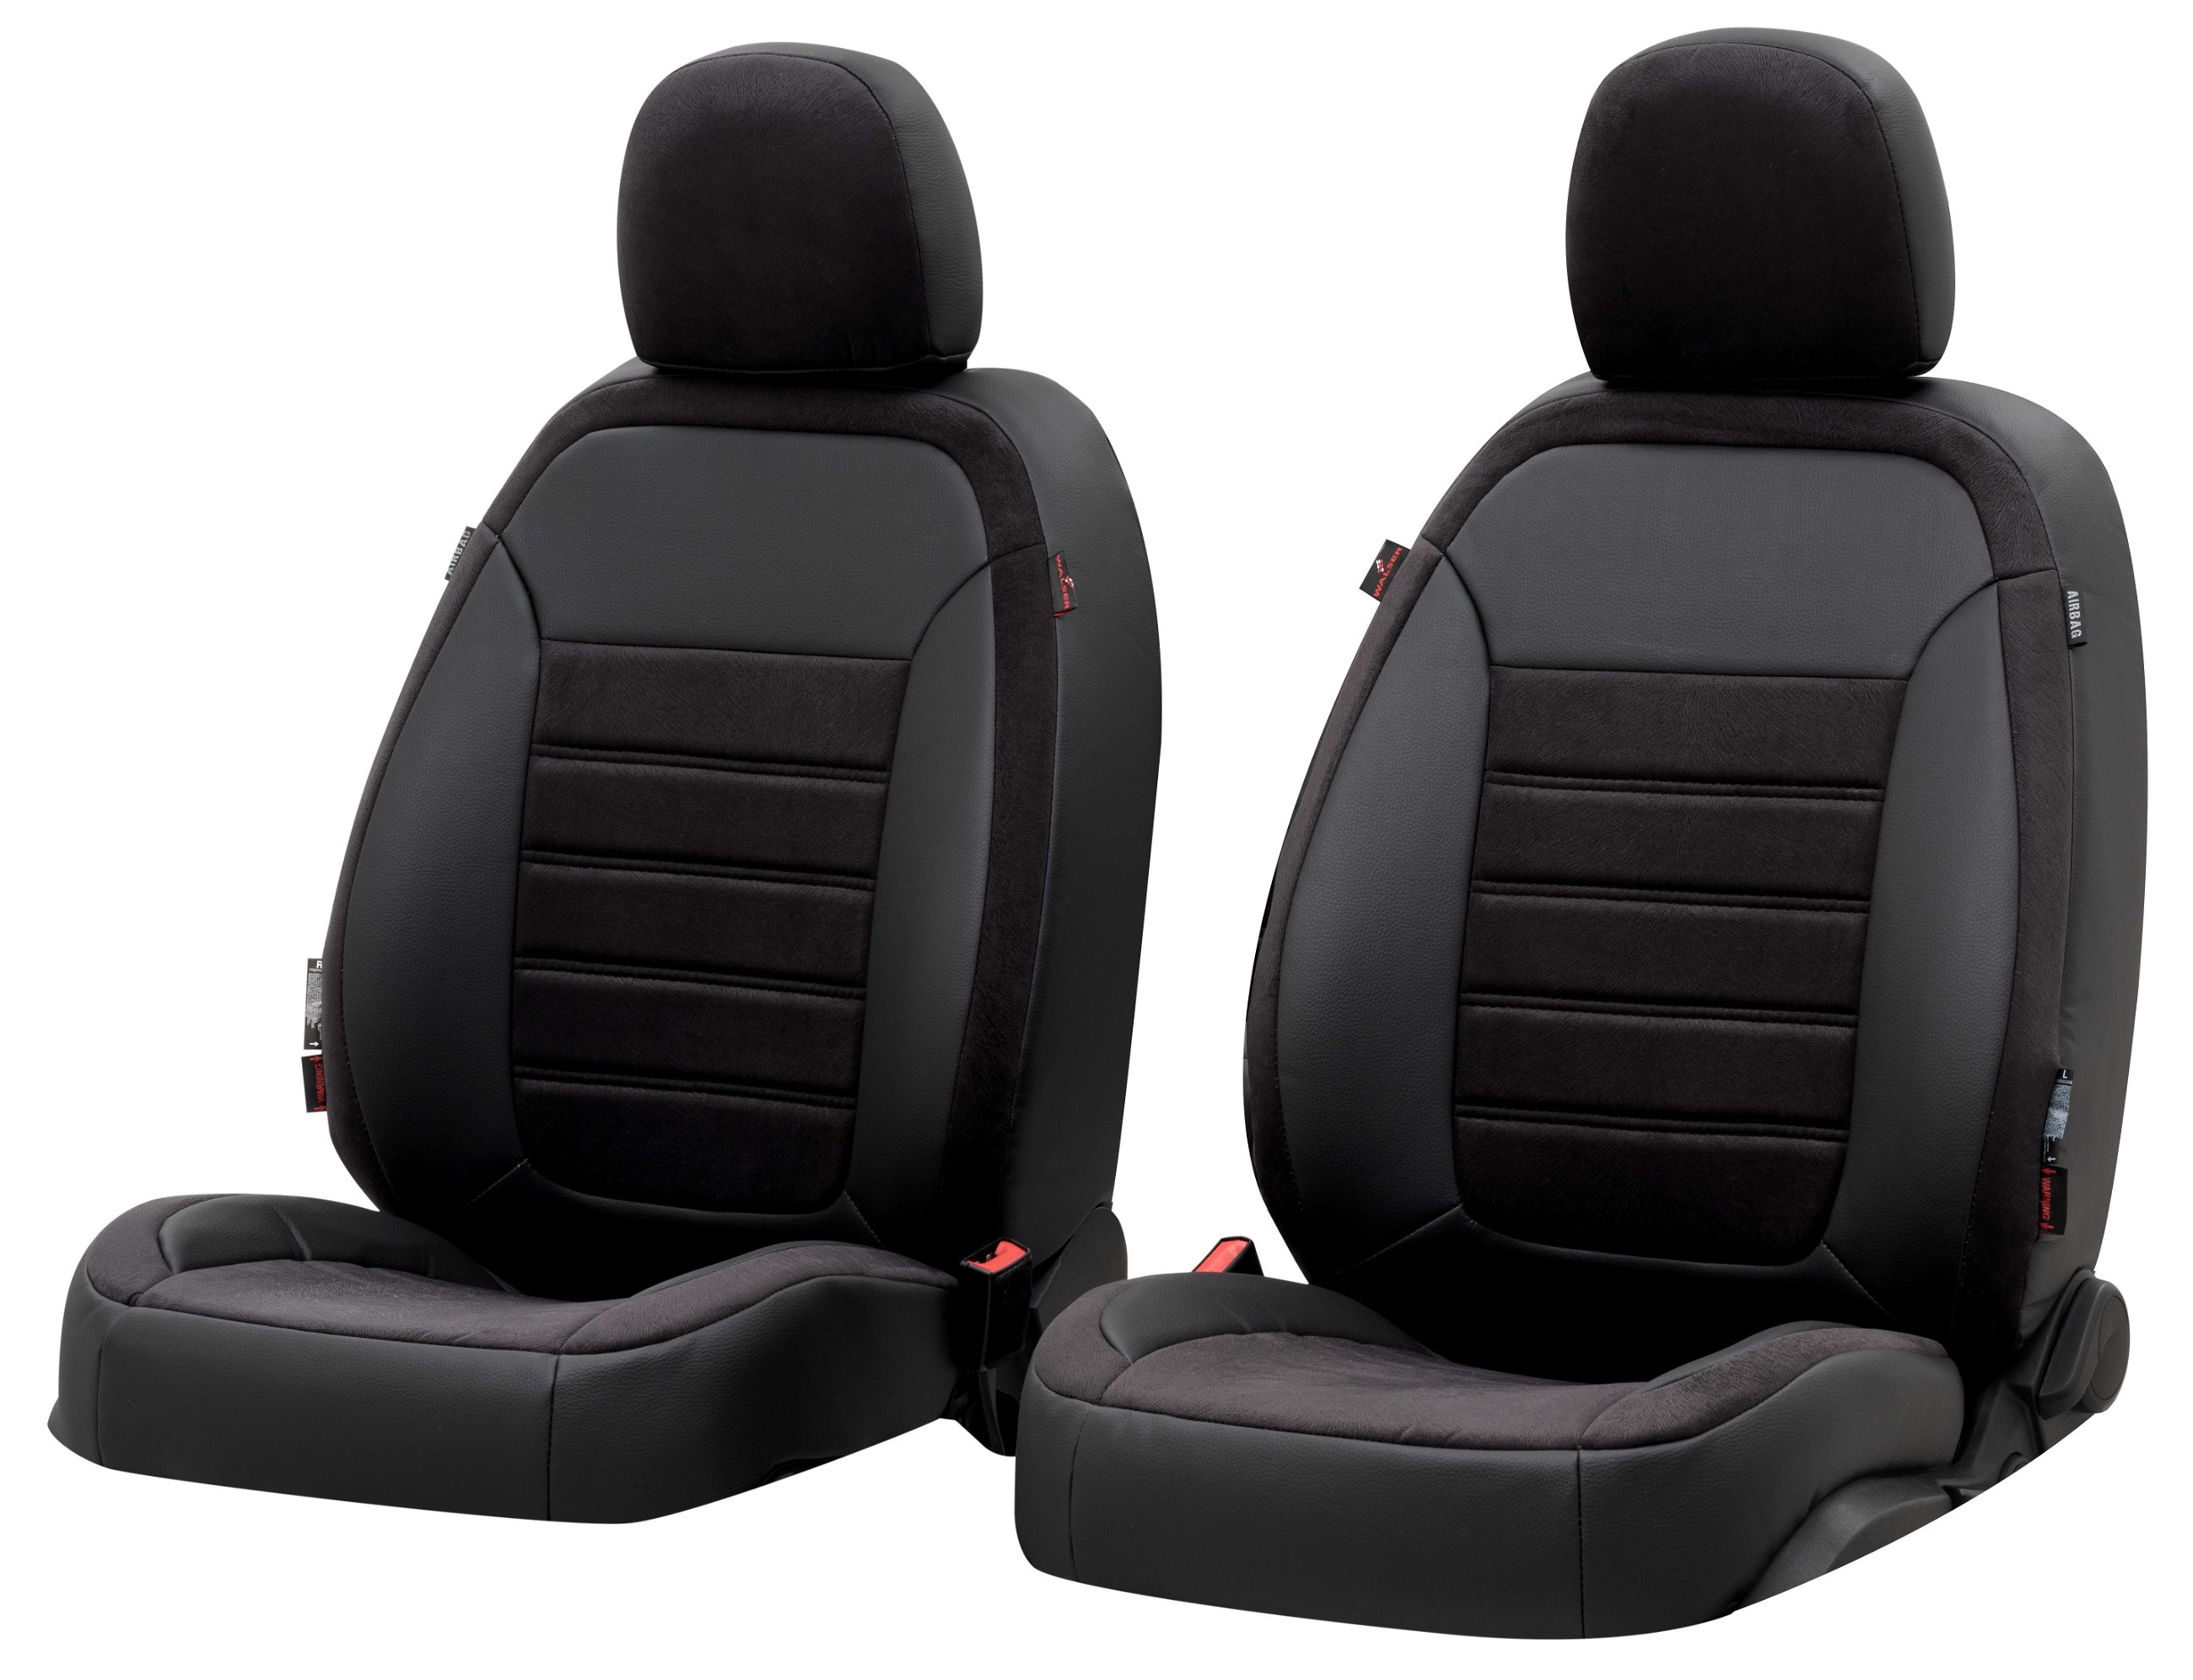 Housse de siège Bari pour Mercedes-Benz VITO Mixto W447 10/2014-auj., 2 housses de siège pour sièges normaux